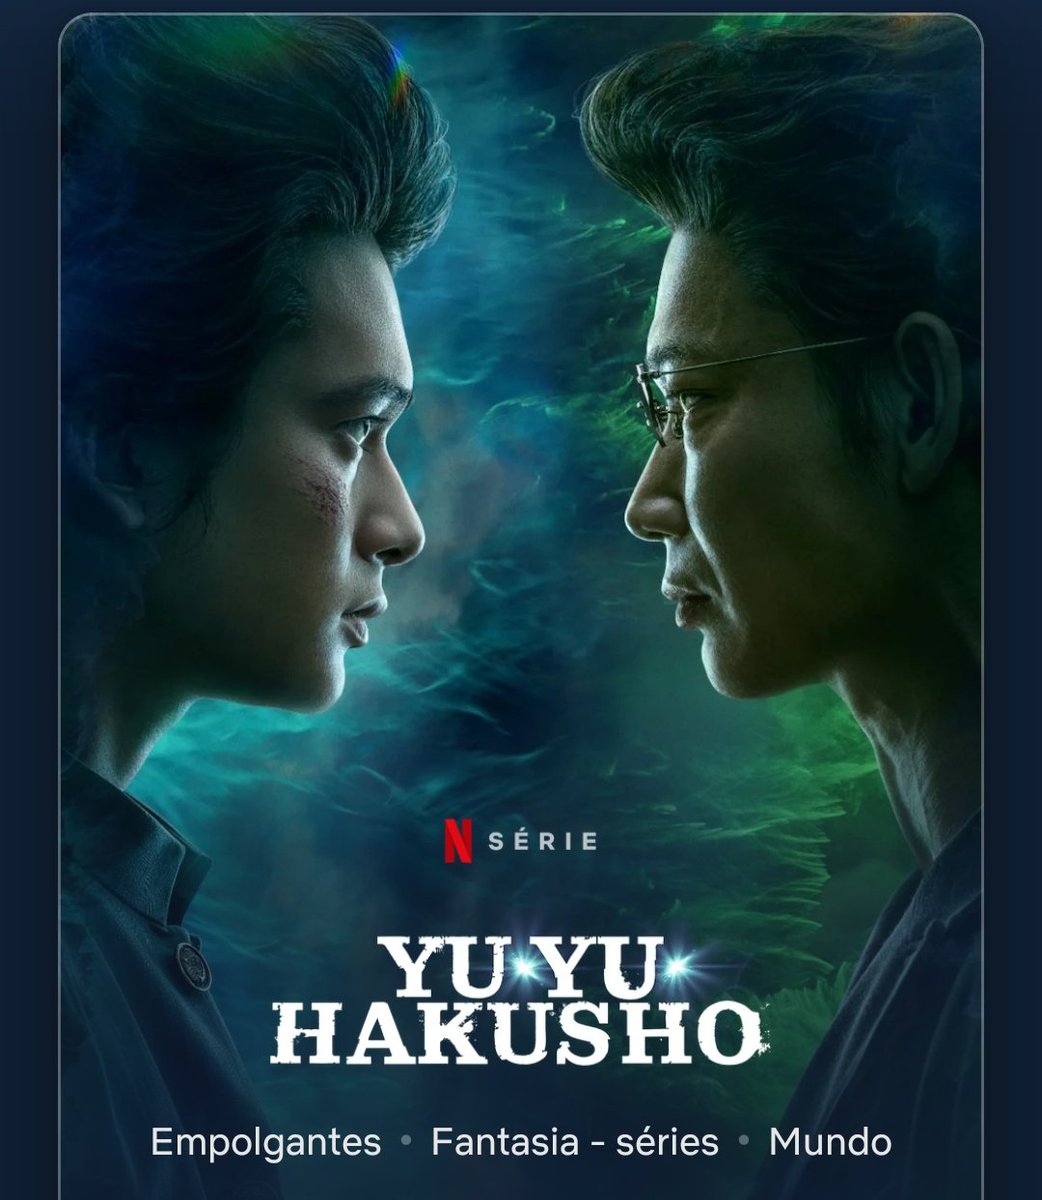 ANIME-se on X: Yu Yu Hakusho live action já está disponível na Netflix! -  Disponível legendado e dublado. - 5 episódios com cerca de 50 minutos cada.  (  / X